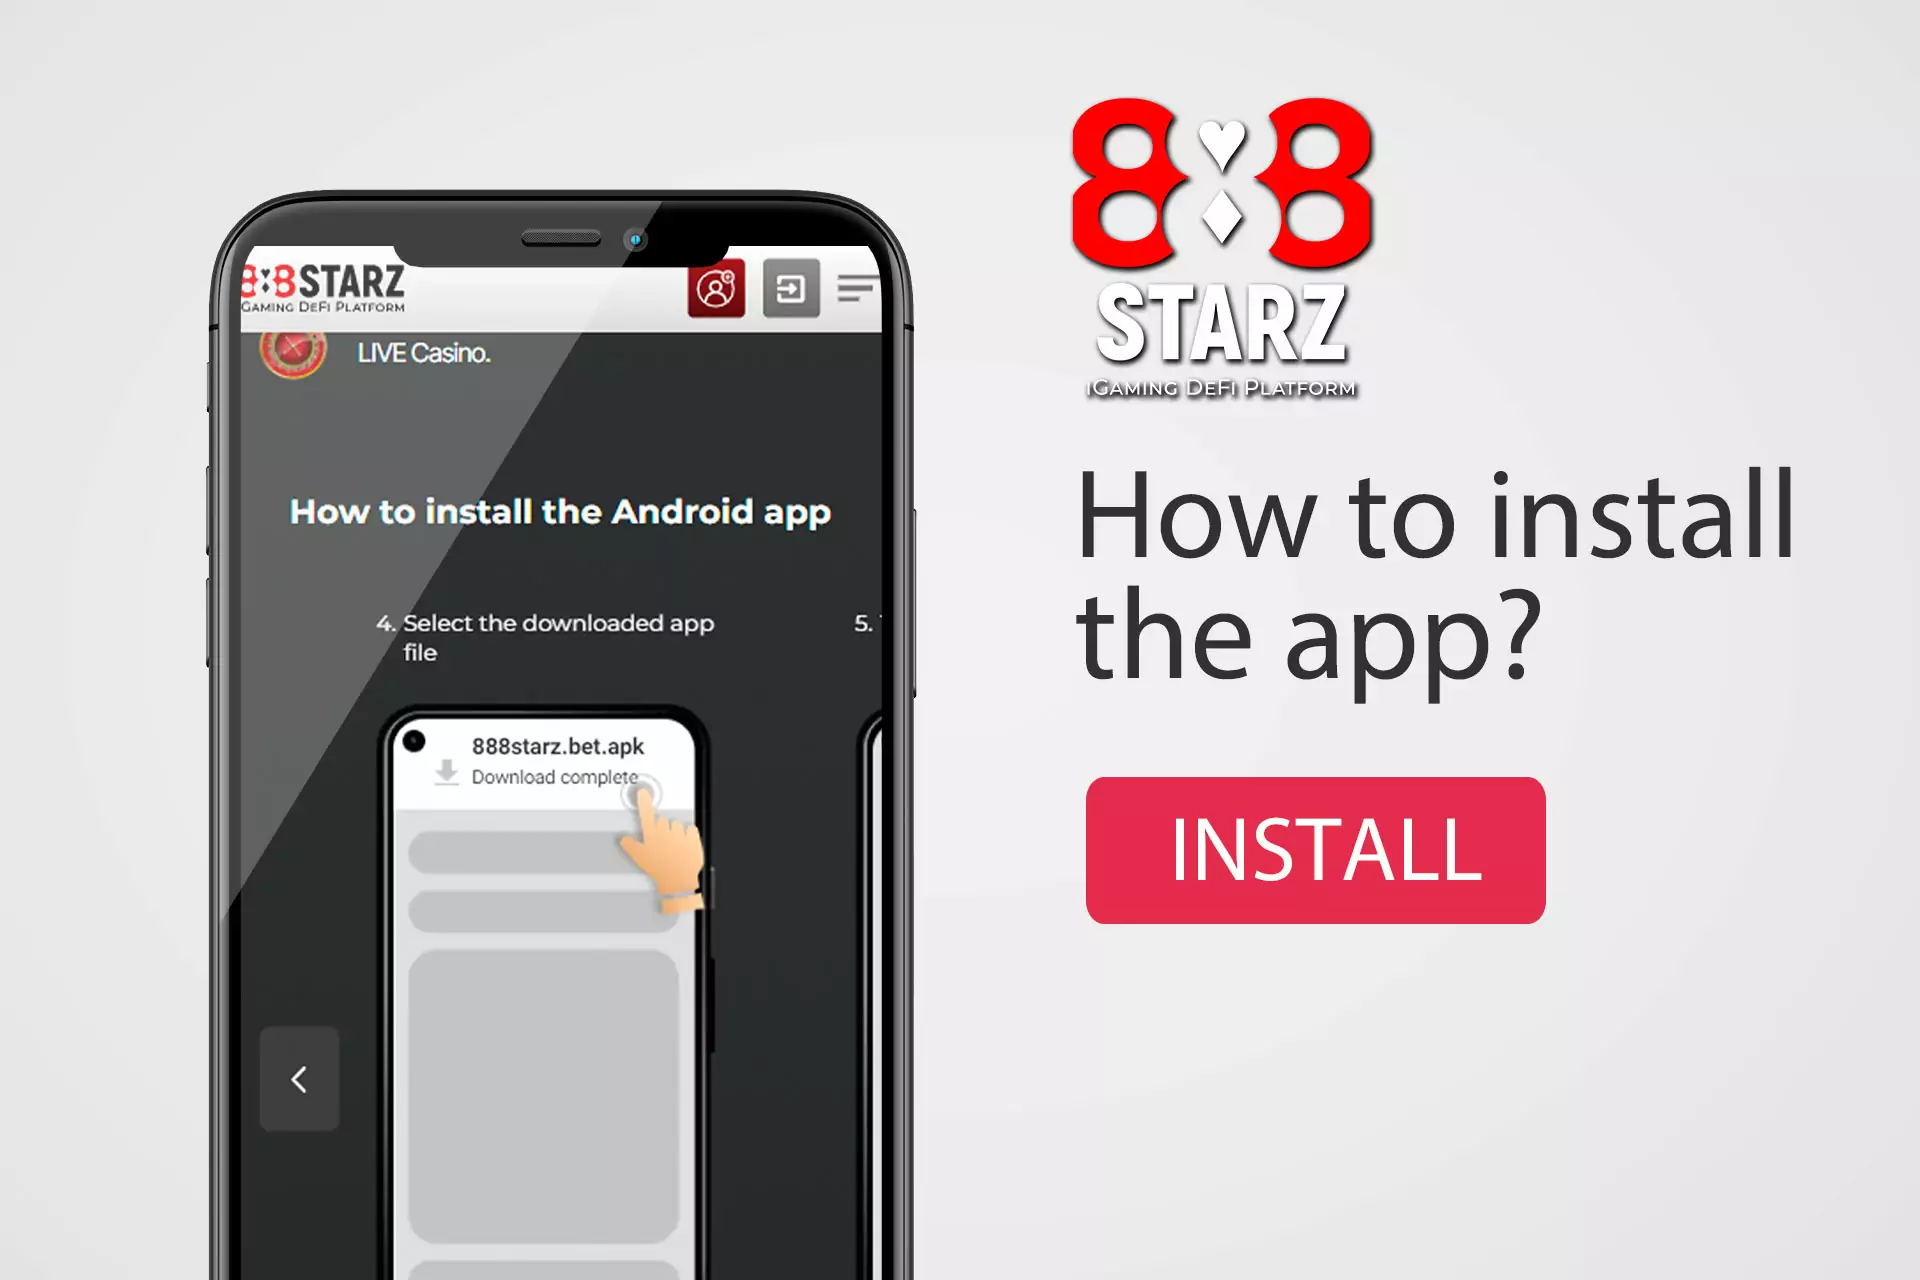 888starz ऐप इंस्टॉल करने के लिए आपको एपीके फाइल डाउनलोड करनी होगी।